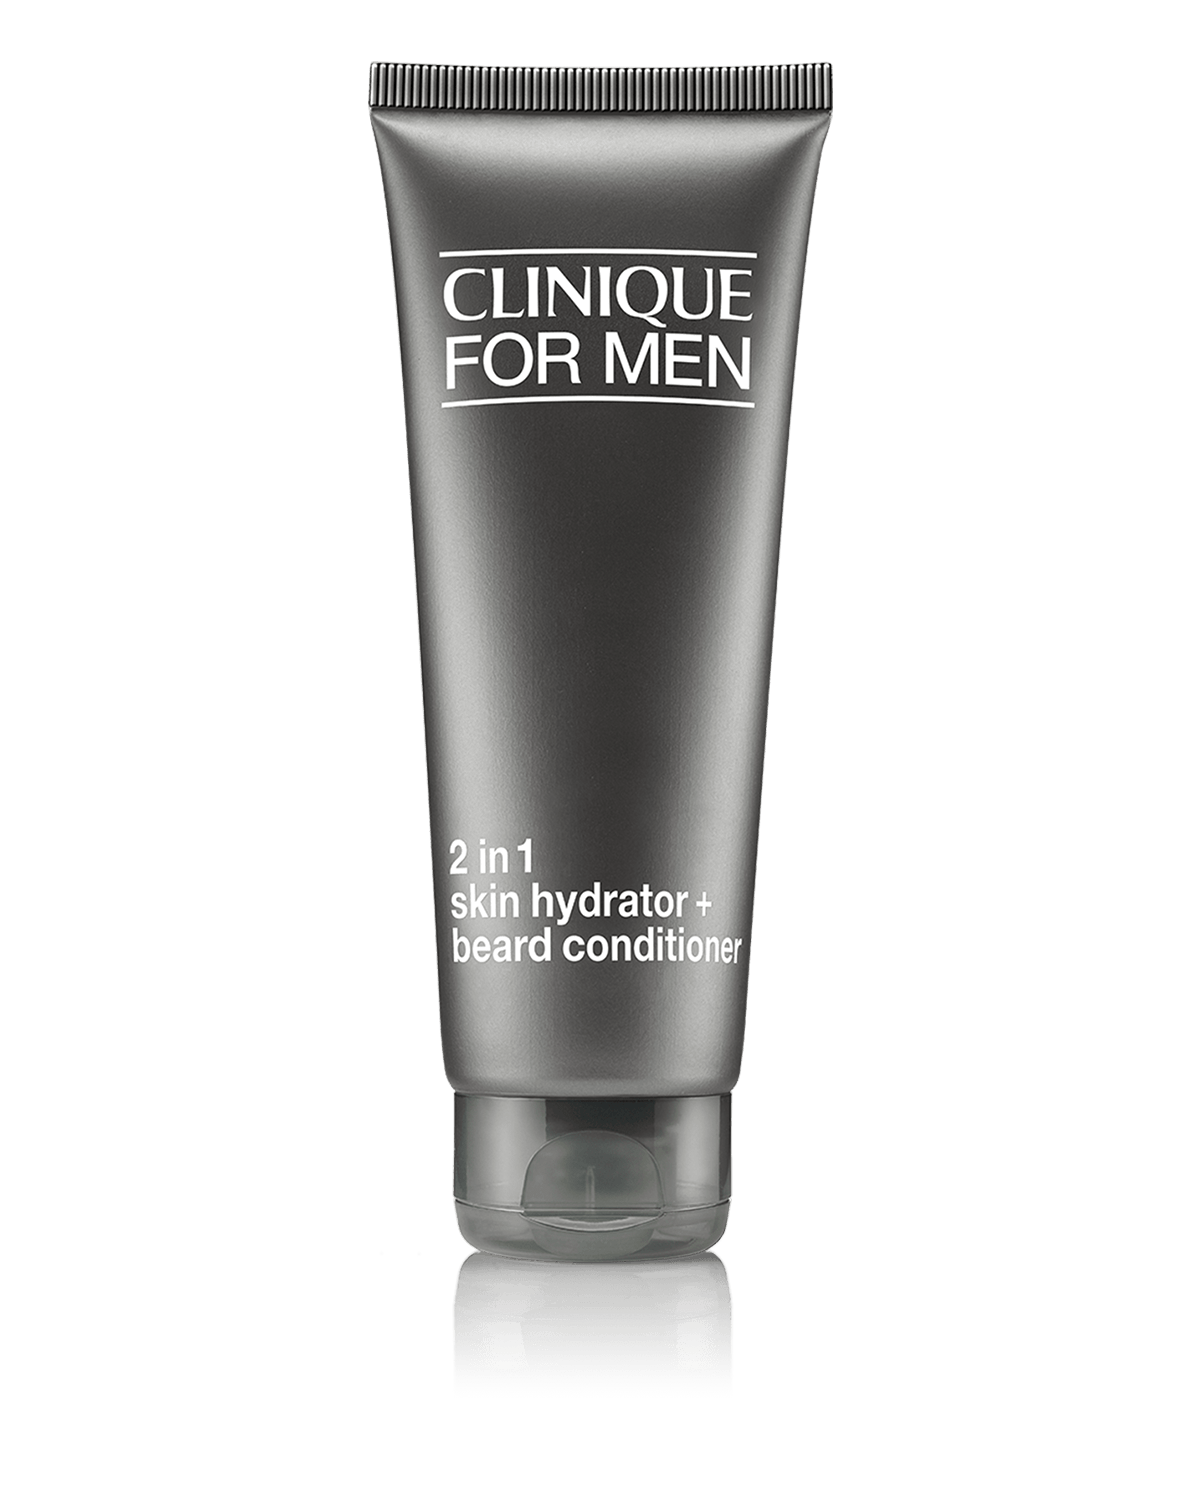 Clinique For Men™ 2 in 1 Skin Hydrator + Beard Conditioner